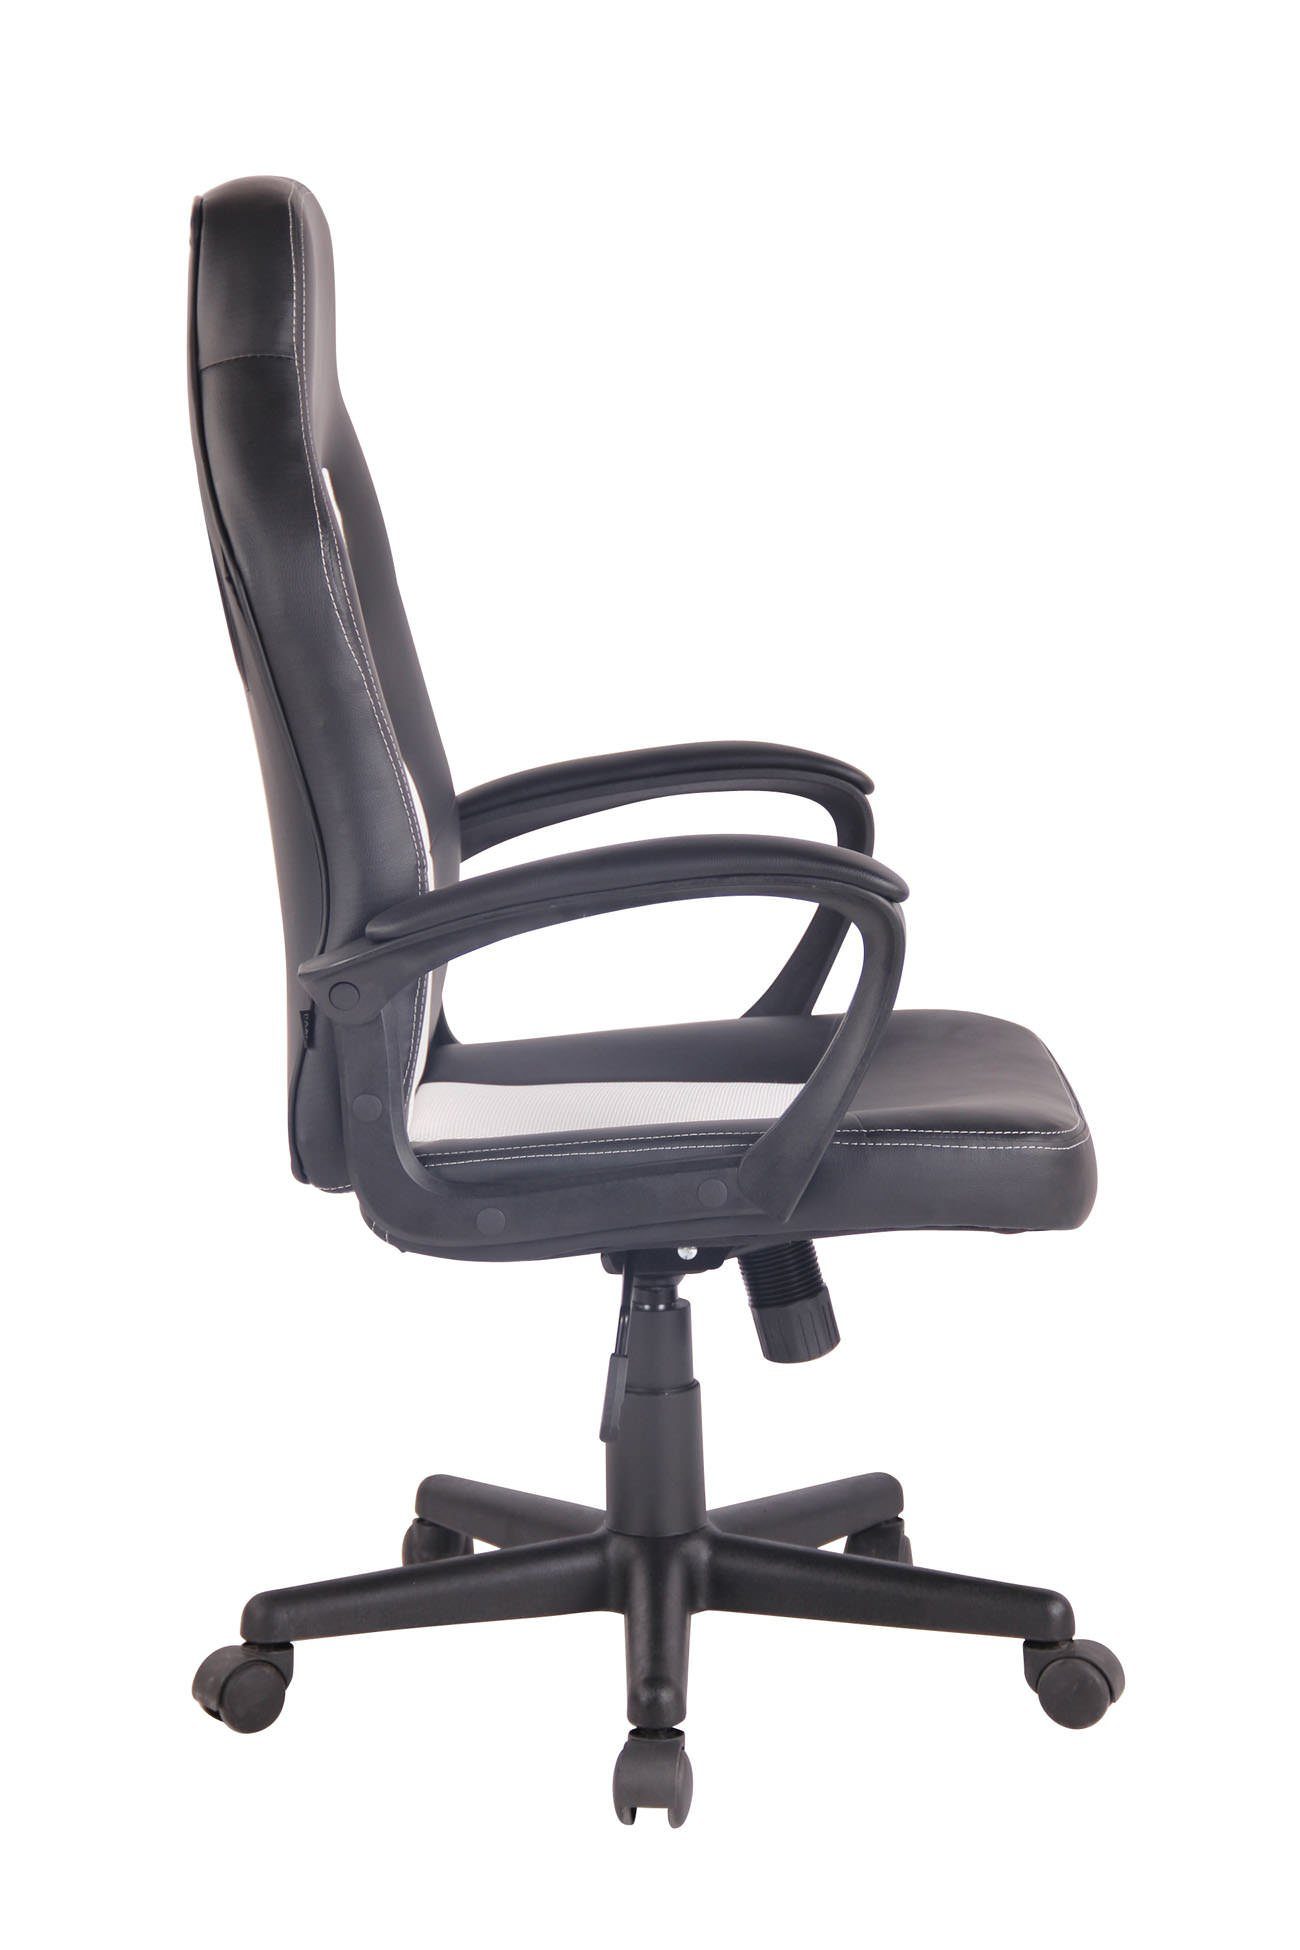 schwarz/weiß und drehbar CLP höhenverstellbar Chair Gaming Elbing,